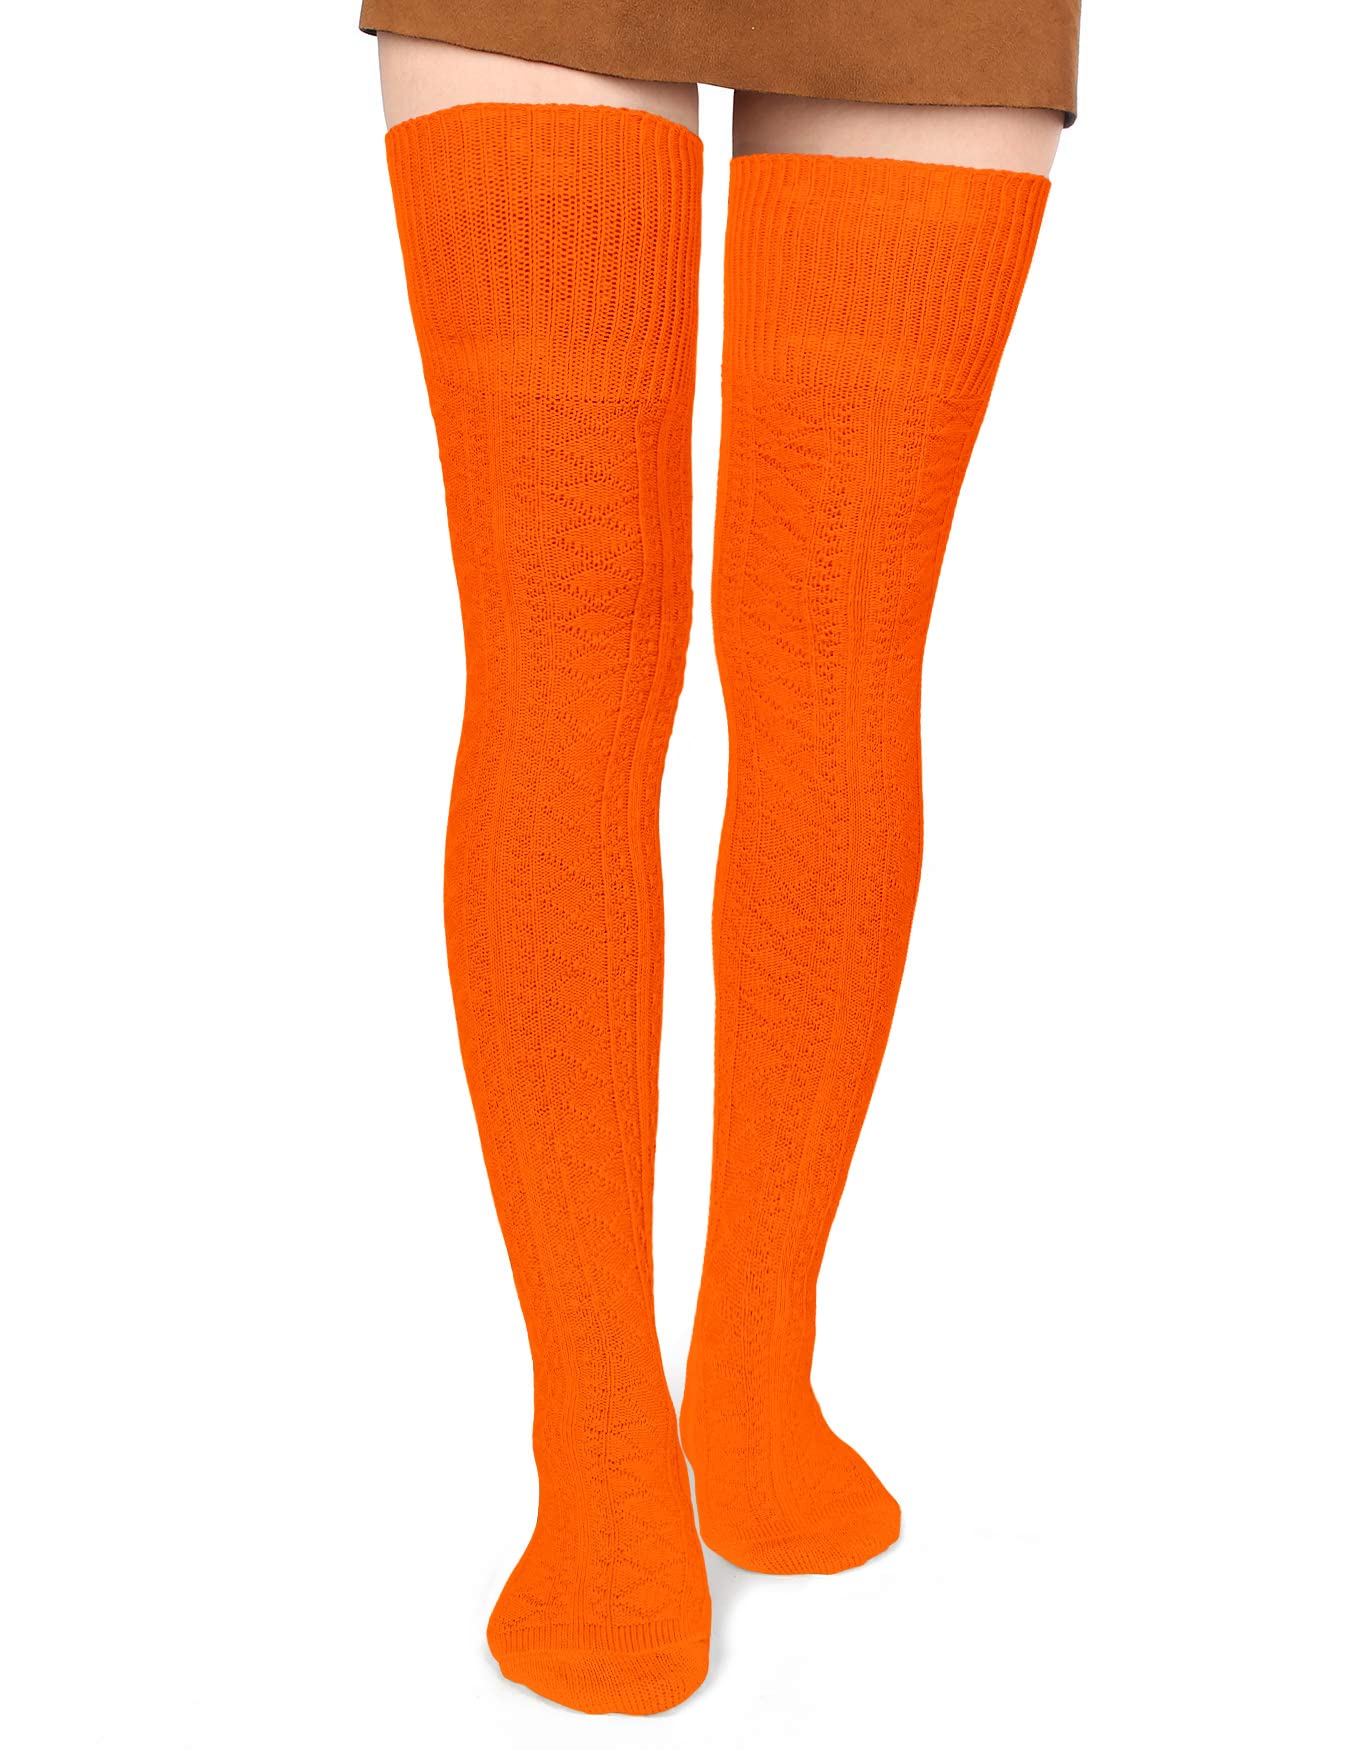 Thigh High Socks Boot Sock Women-Halloween Pumpkin - Moon Wood